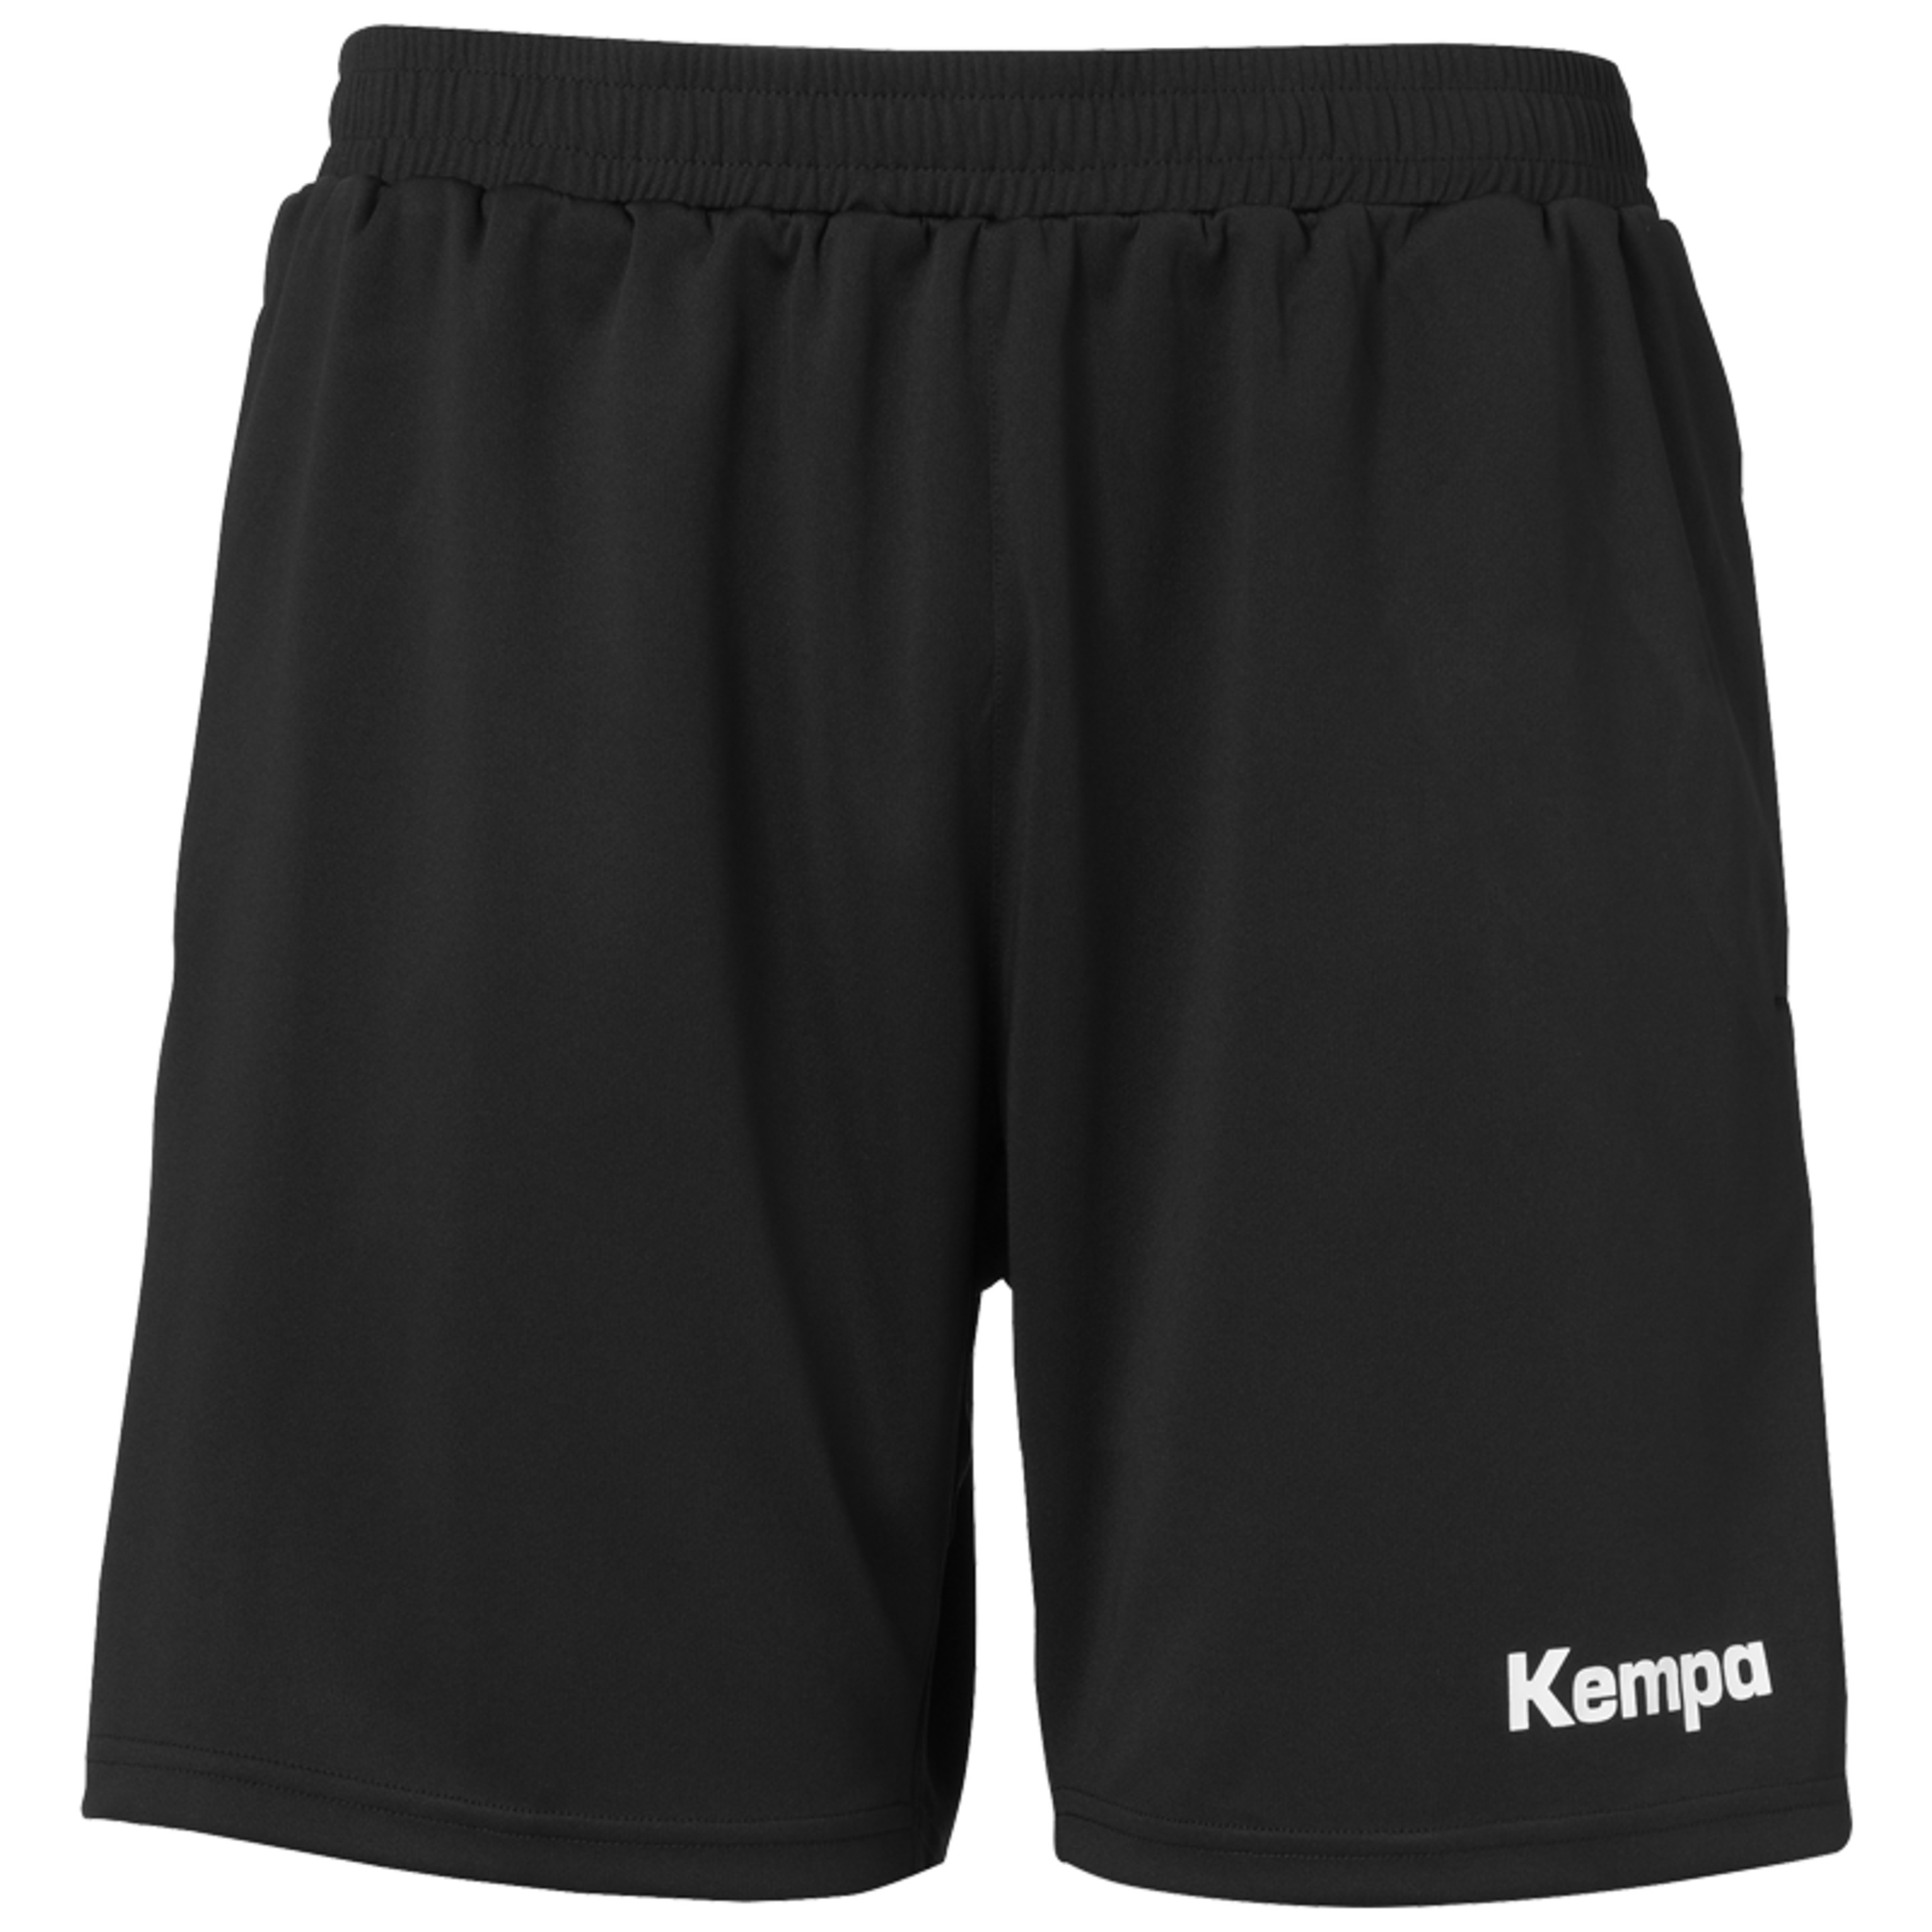 Pocket Shorts Negro Kempa - negro - Pocket Shorts Negro Kempa  MKP